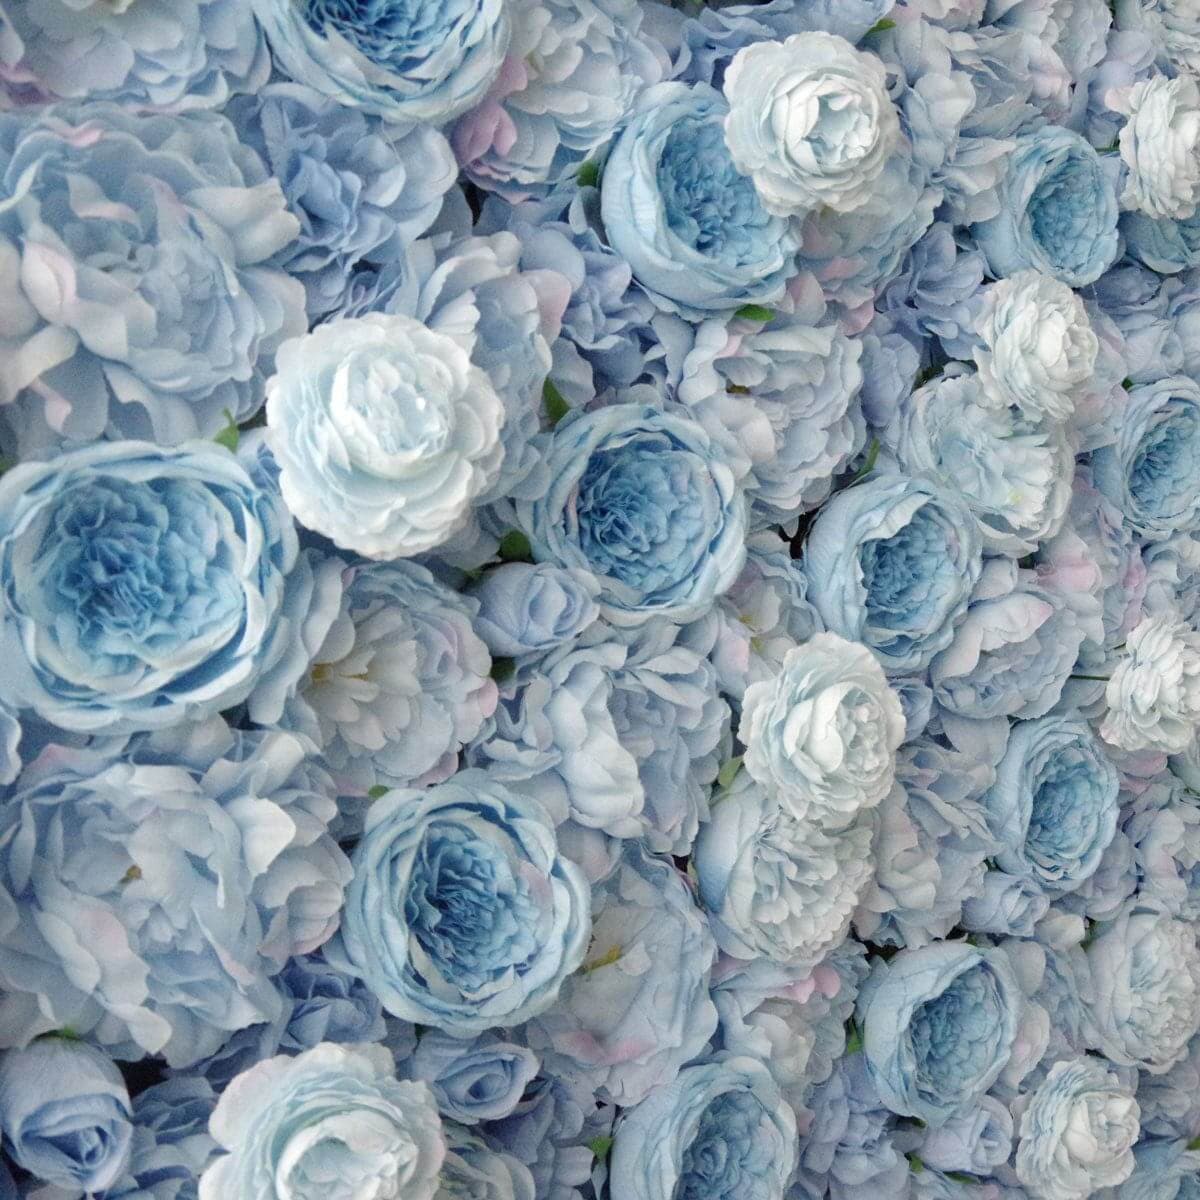 3D Roll Up Artificial Flower Wall Wedding Artificial Silk Flower Wall Backdrop White Blue Fabric Flower Wall